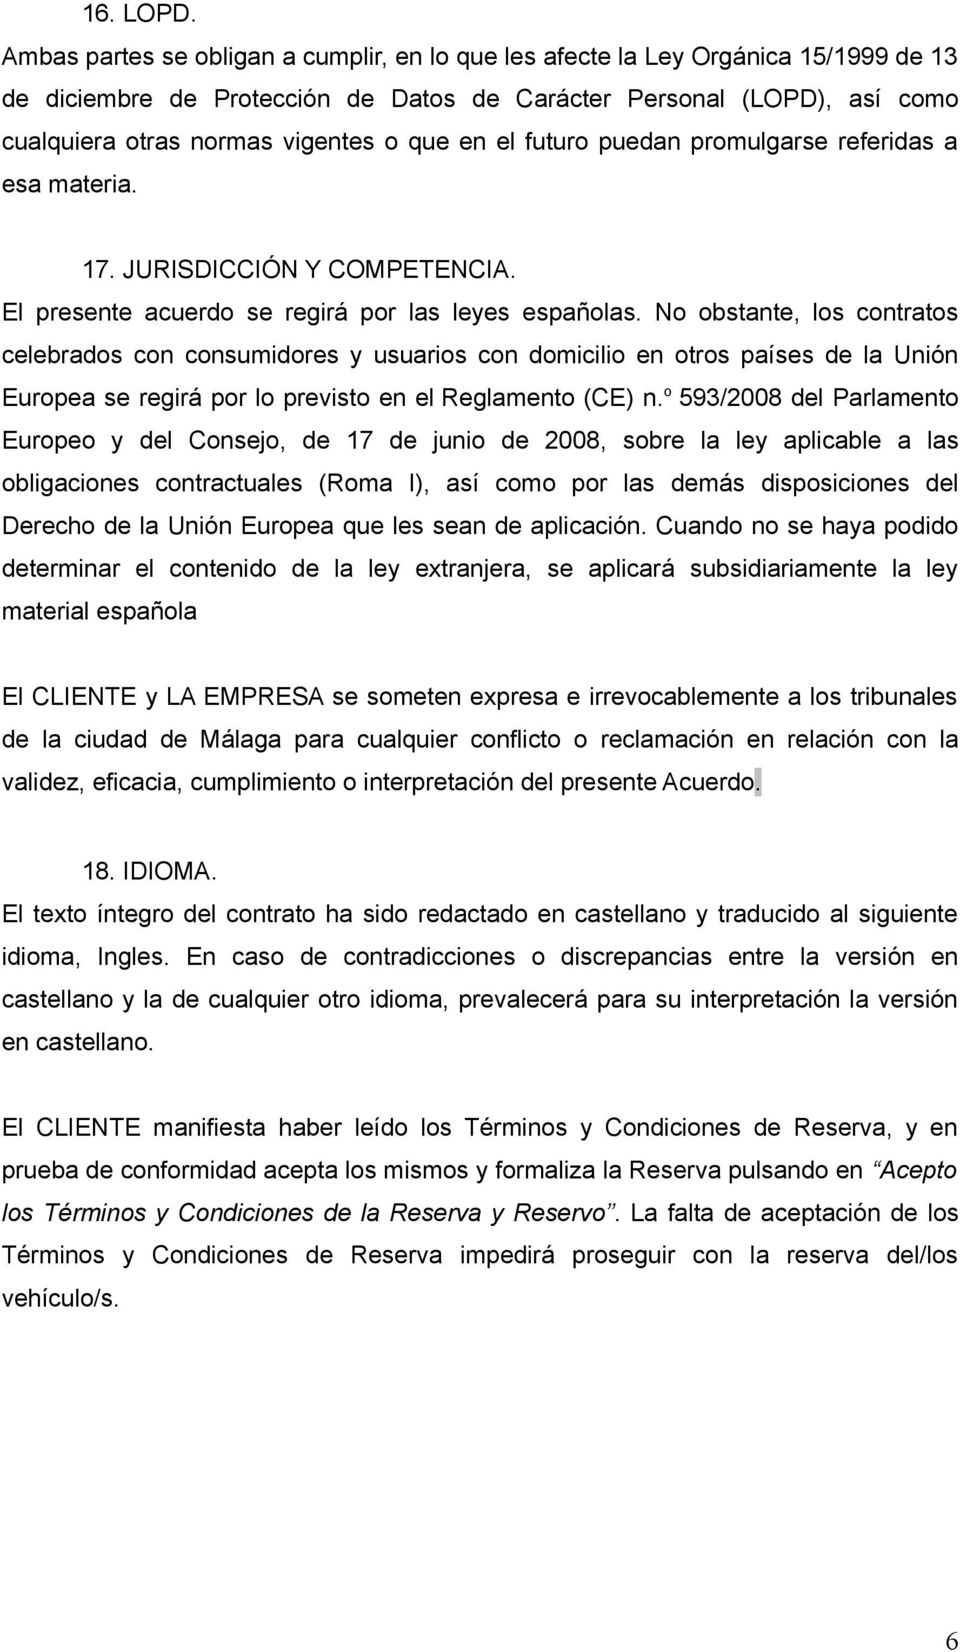 en el futuro puedan promulgarse referidas a esa materia. 17. JURISDICCIÓN Y COMPETENCIA. El presente acuerdo se regirá por las leyes españolas.